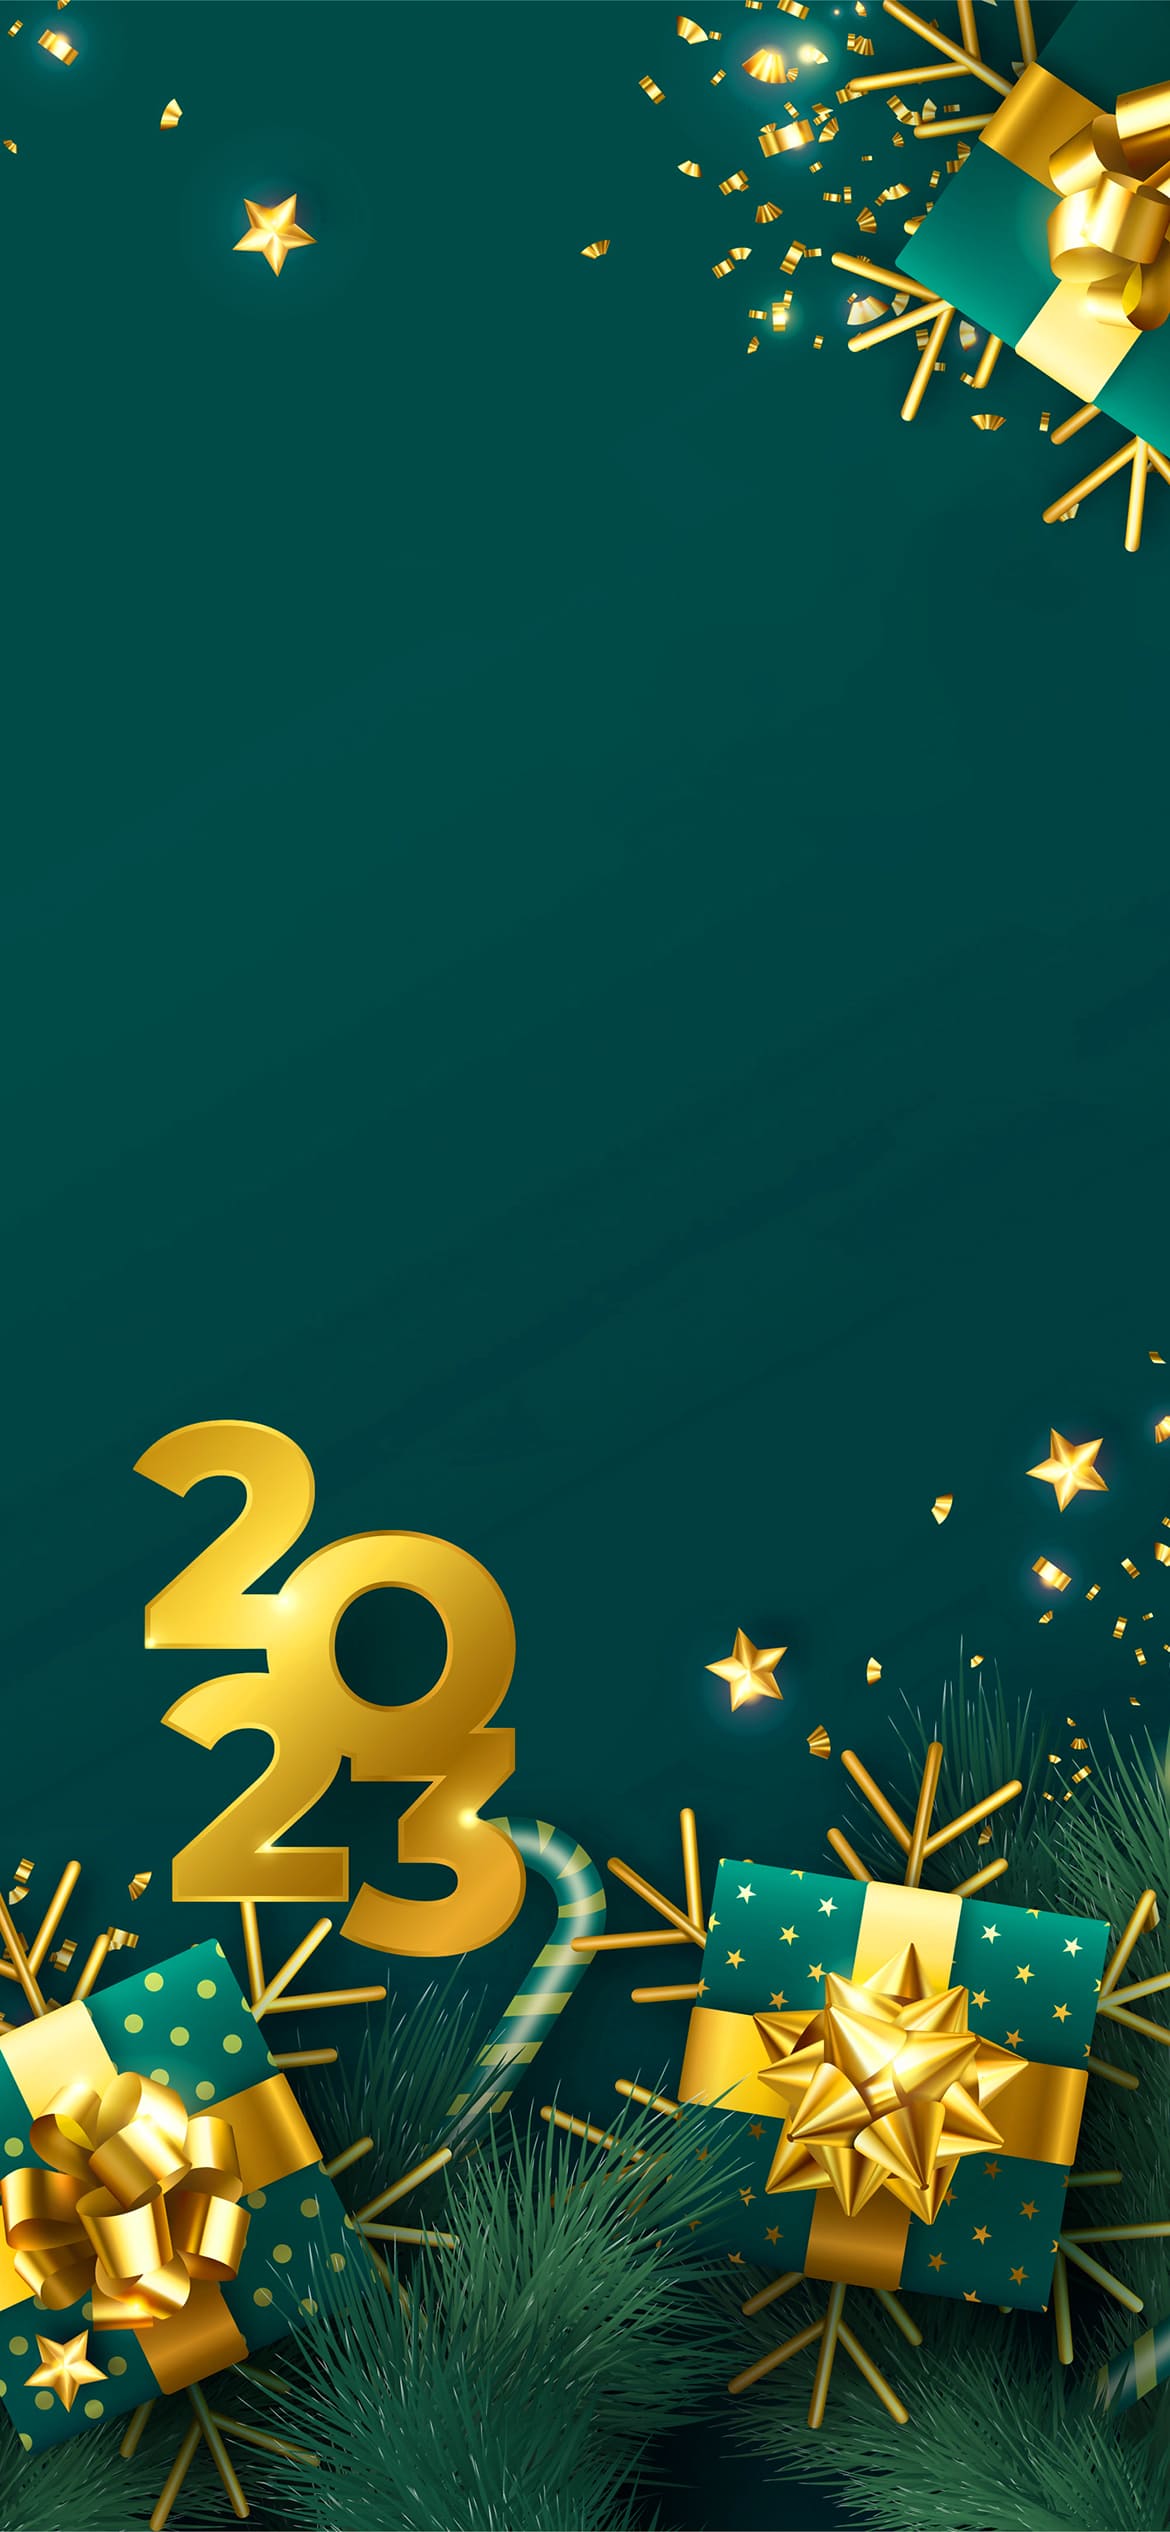 Happy New Year 2023 HD Wallpapers  PixelsTalkNet